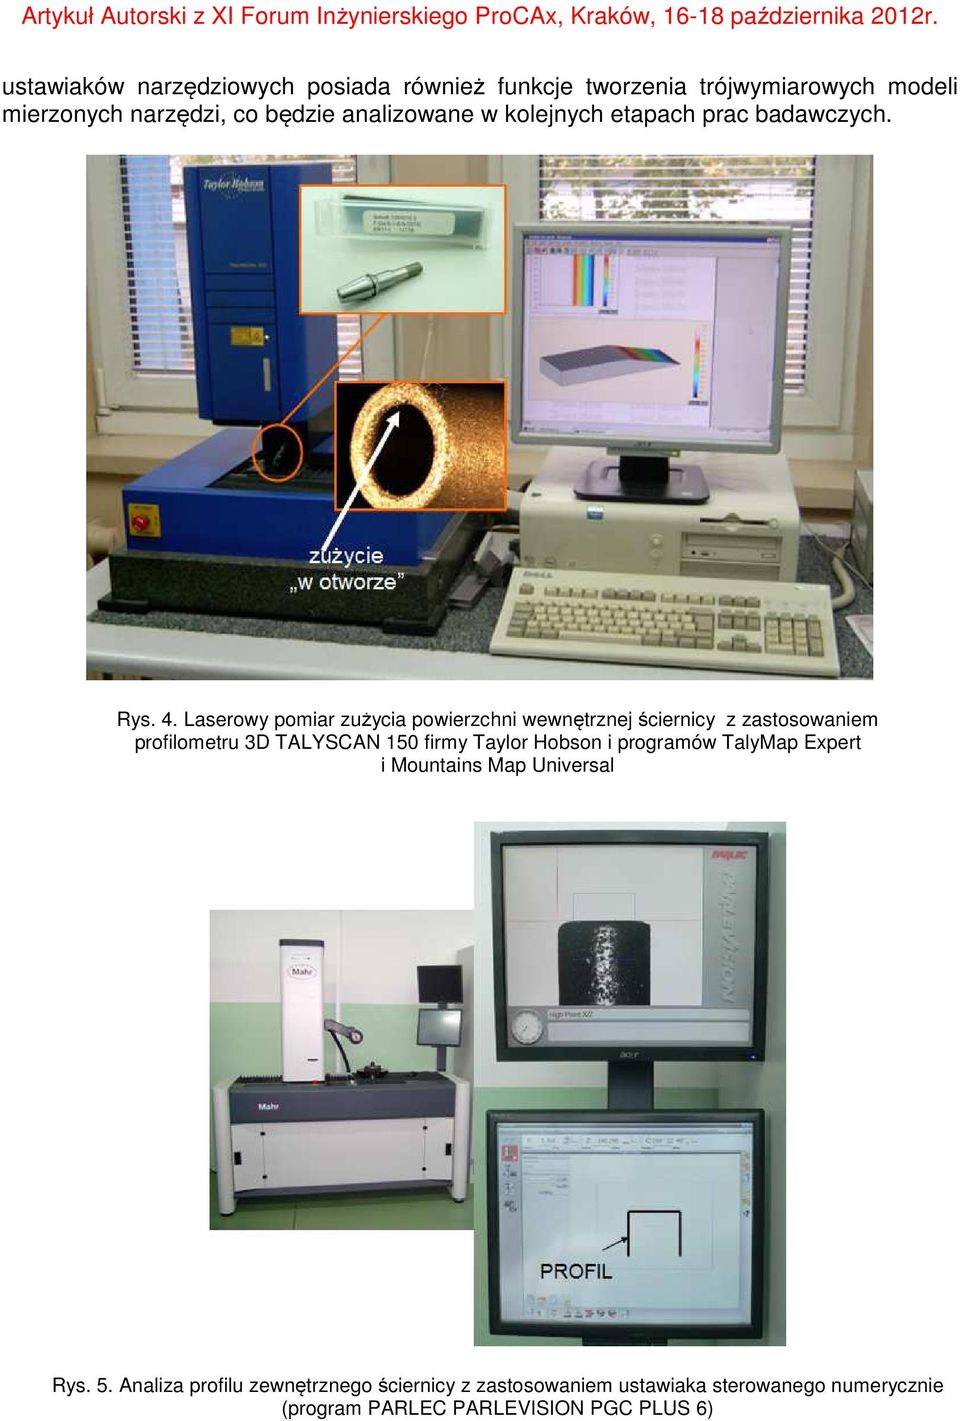 Laserowy pomiar zużycia powierzchni wewnętrznej ściernicy z zastosowaniem profilometru 3D TALYSCAN 150 firmy Taylor